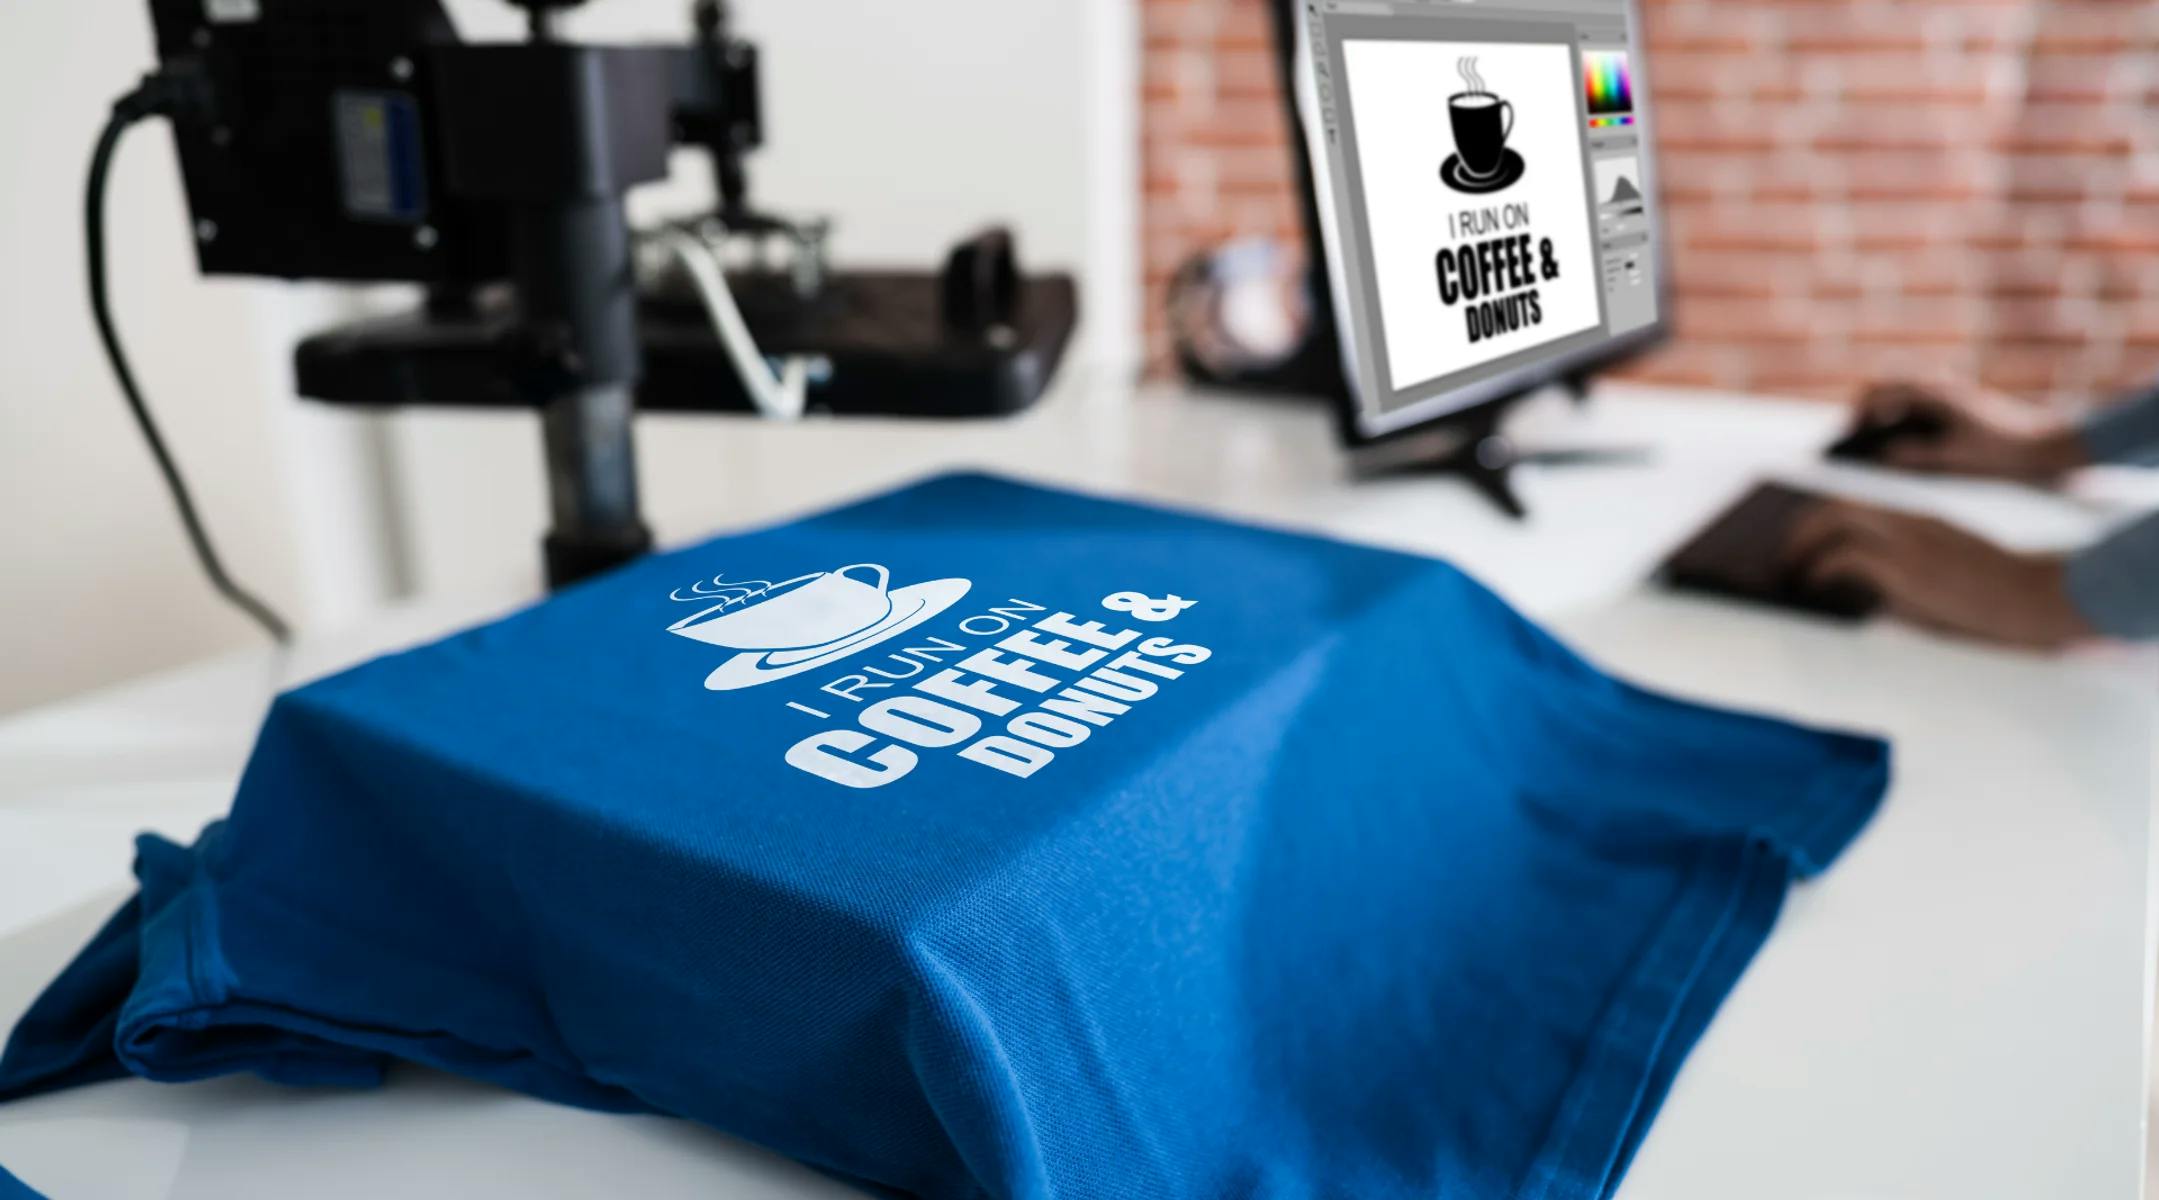 Blå t-skjorte med teksten "I run on coffe & donuts" som ligger på en varmepresse